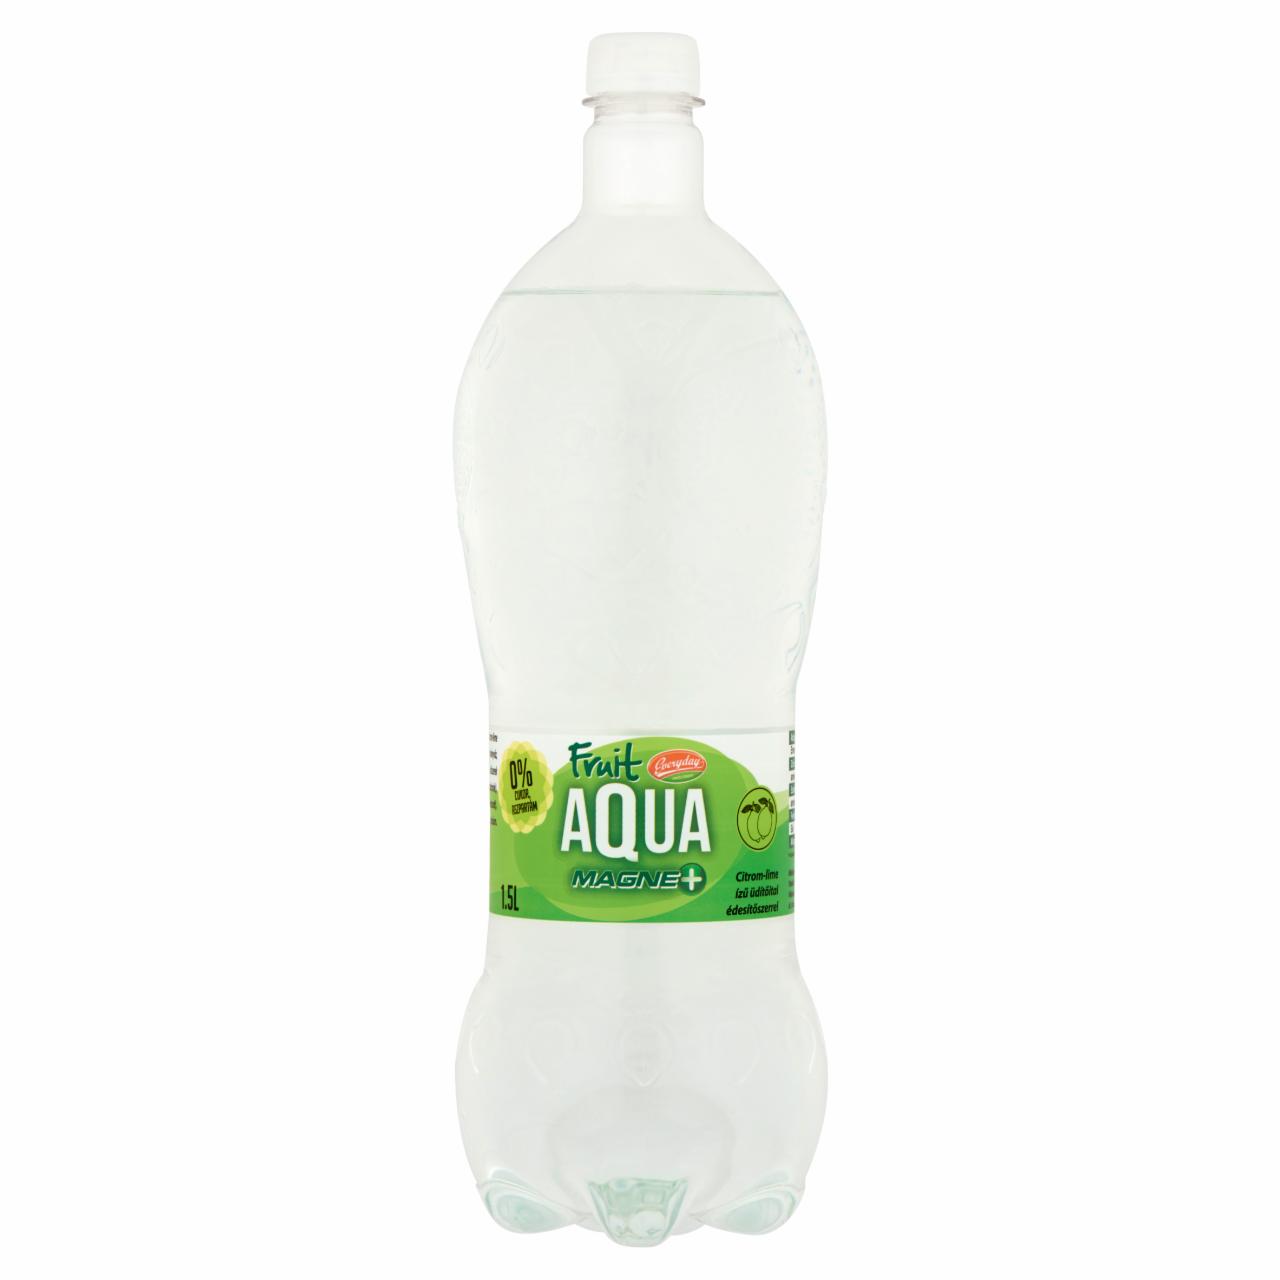 Képek - Everyday Fruit Aqua Magne+ citrom-lime ízű üdítőital édesítőszerrel 1,5 l